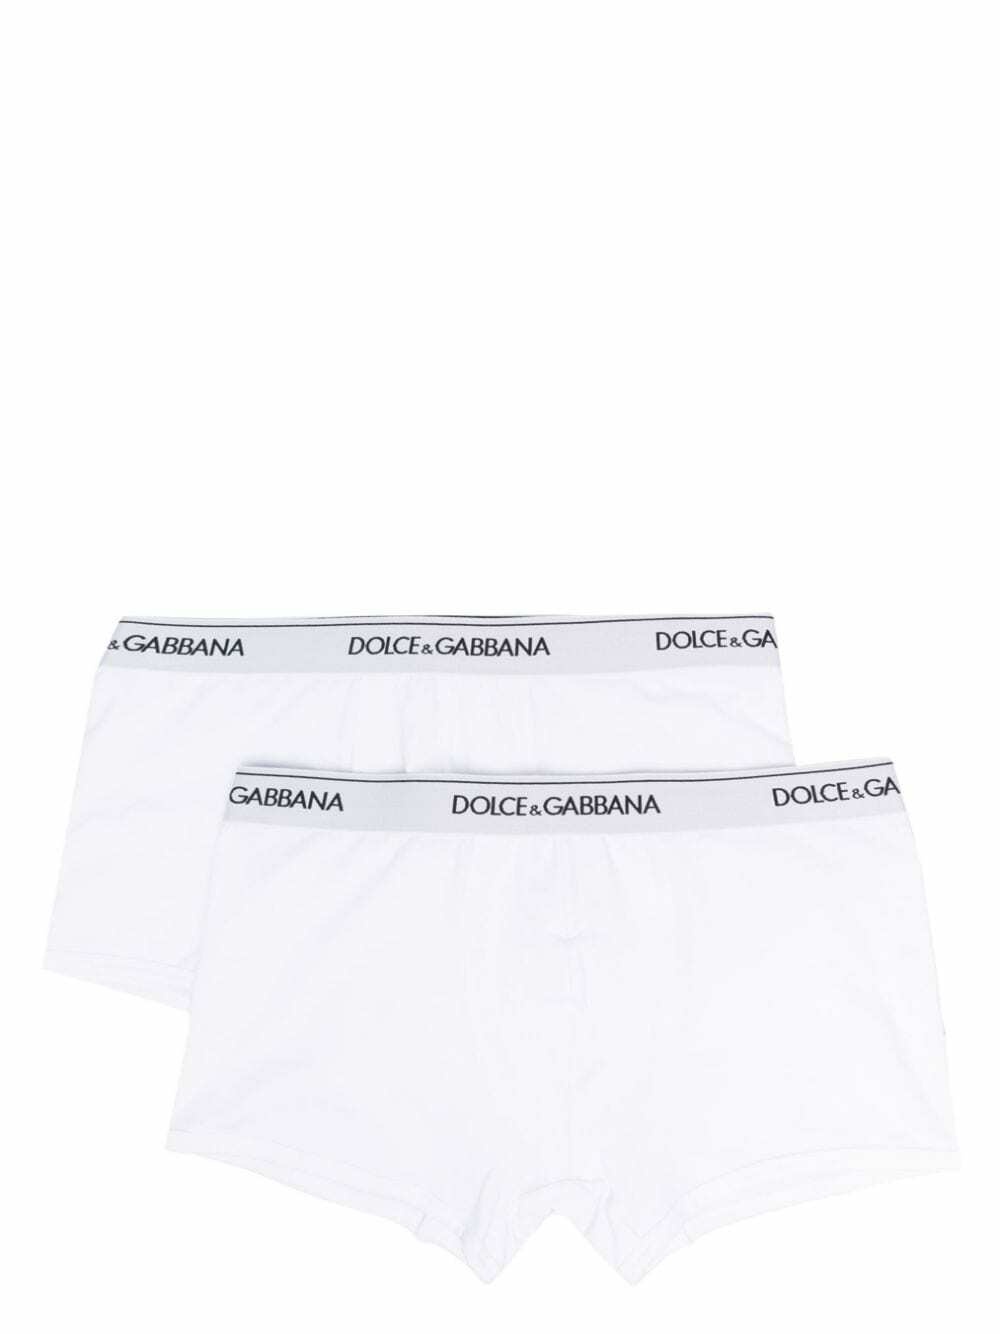 DOLCE & GABBANA - Cotton Boxers Dolce & Gabbana